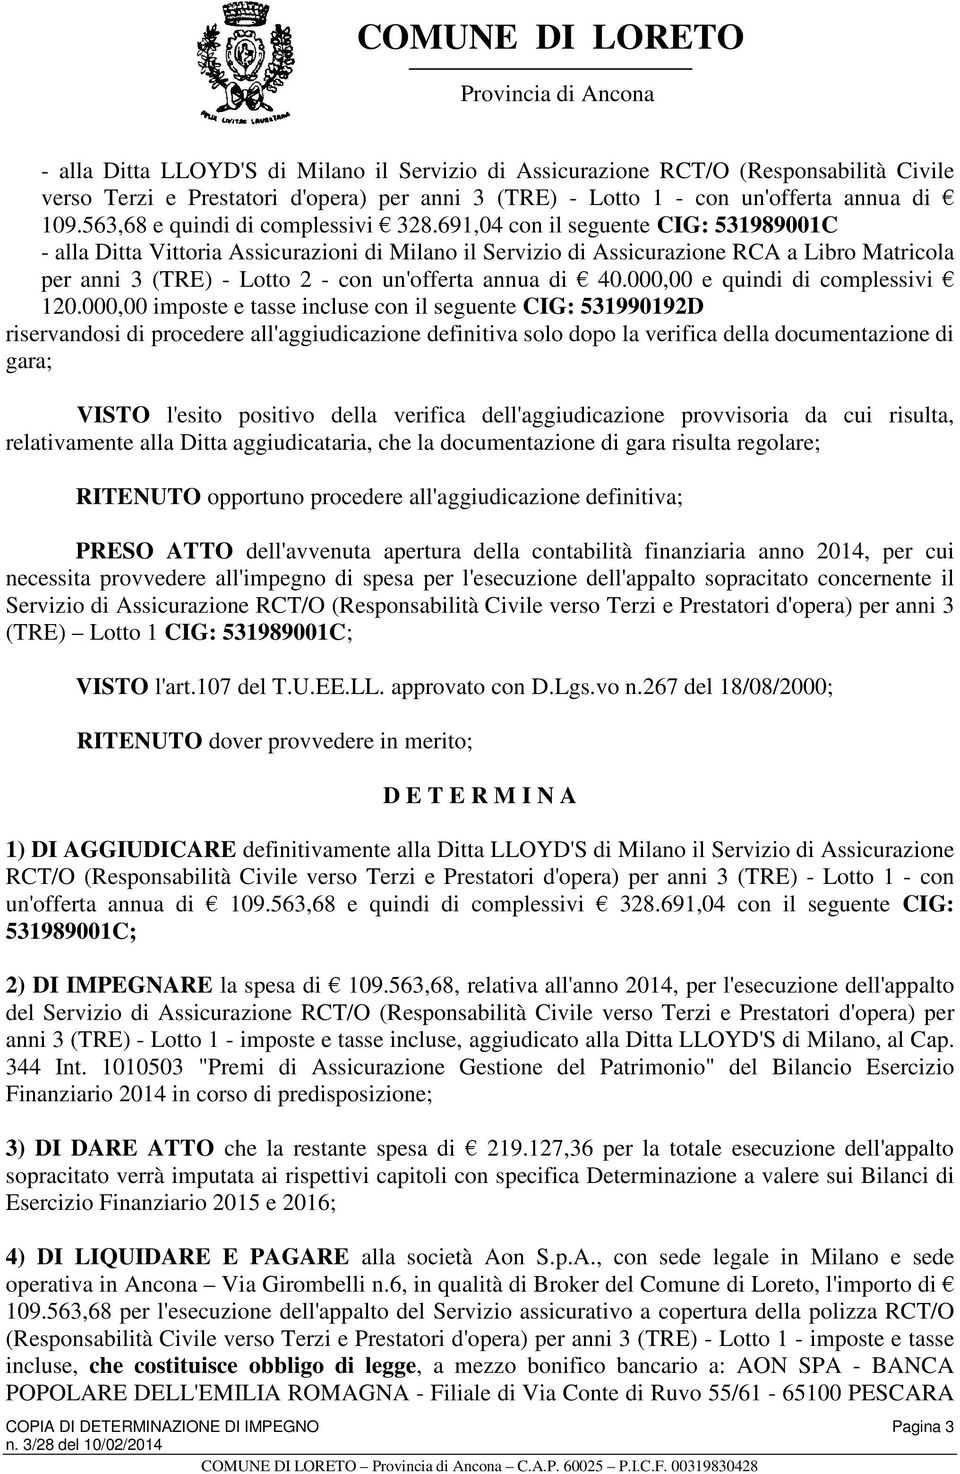 691,04 con il seguente CIG: 531989001C - alla Ditta Vittoria Assicurazioni di Milano il Servizio di Assicurazione RCA a Libro Matricola per anni 3 (TRE) - Lotto 2 - con un'offerta annua di 40.